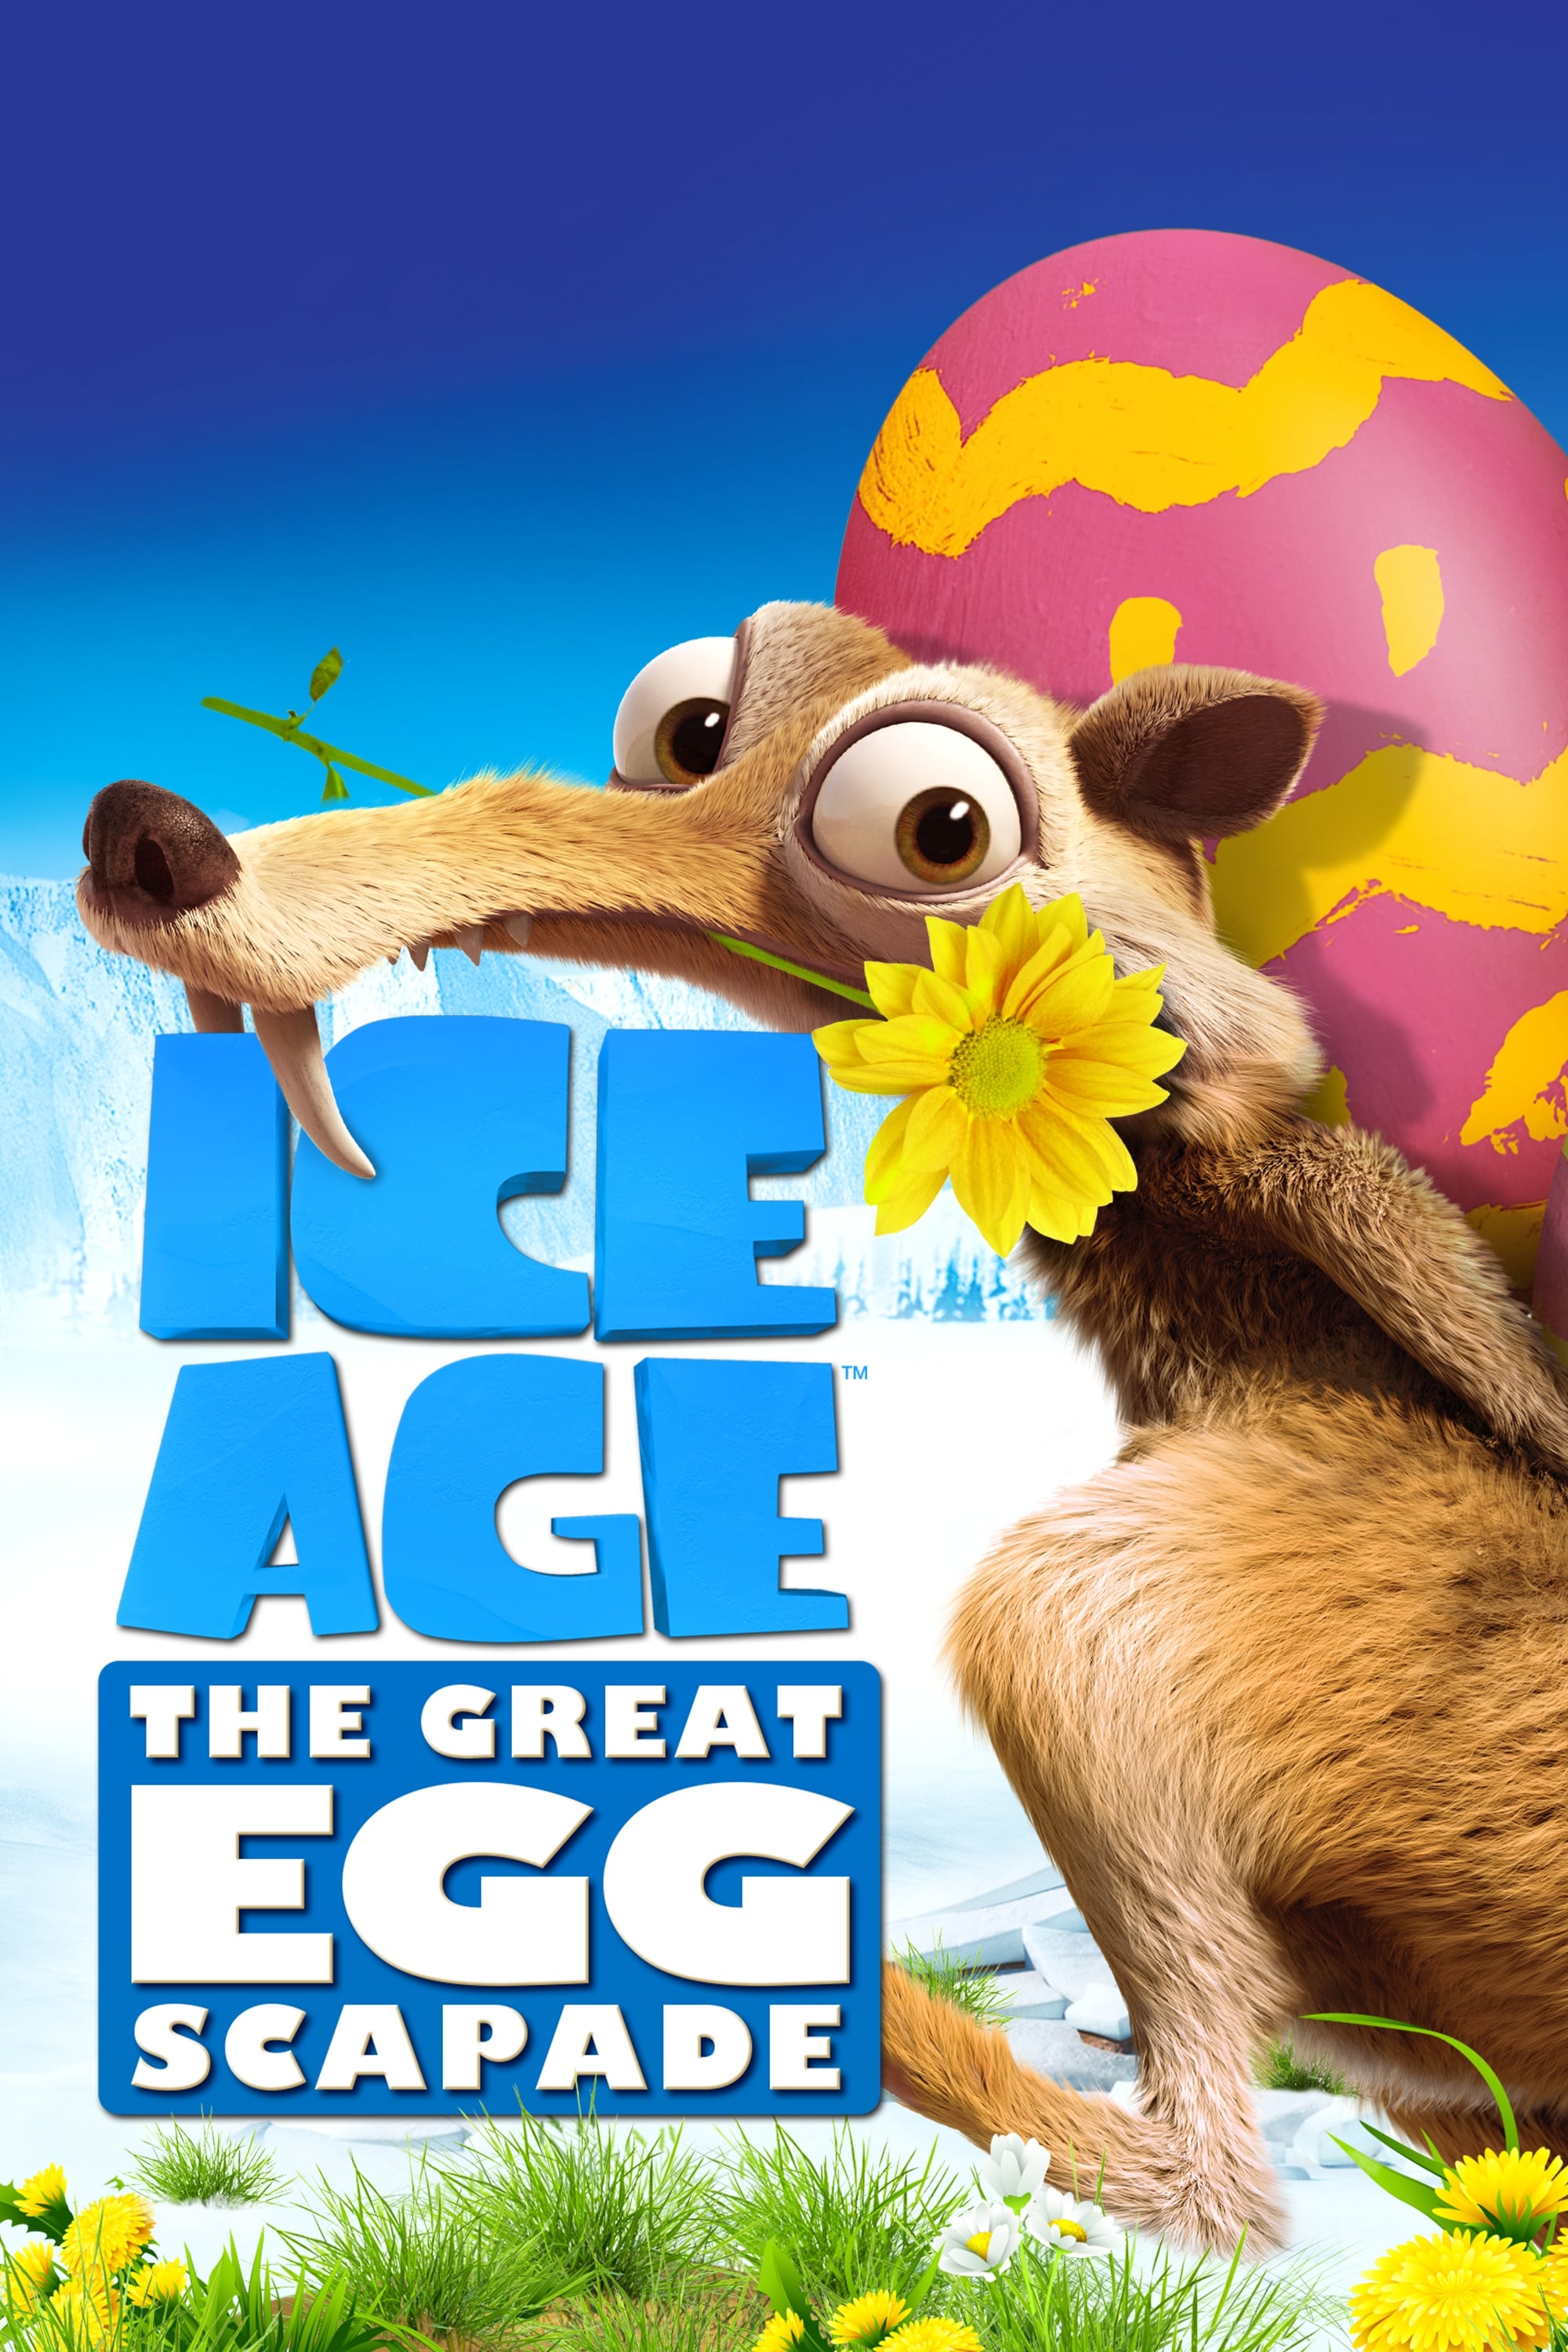 Ice Age: En busca del huevo